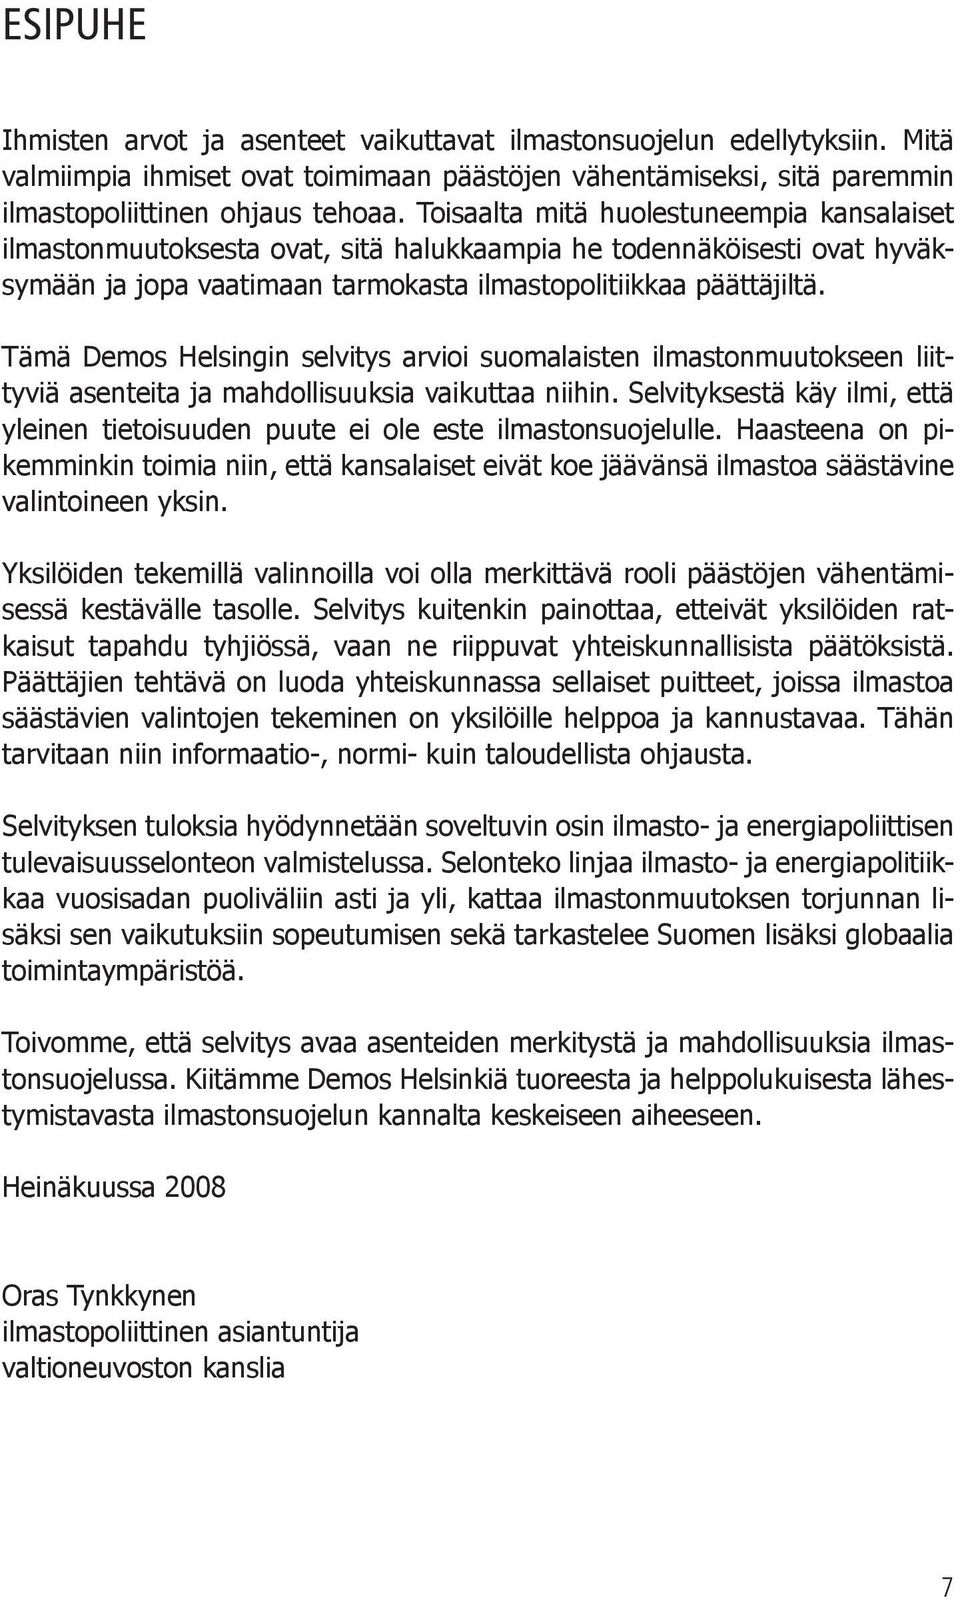 Tämä Demos Helsingin selvitys arvioi suomalaisten ilmastonmuutokseen liittyviä asenteita ja mahdollisuuksia vaikuttaa niihin.